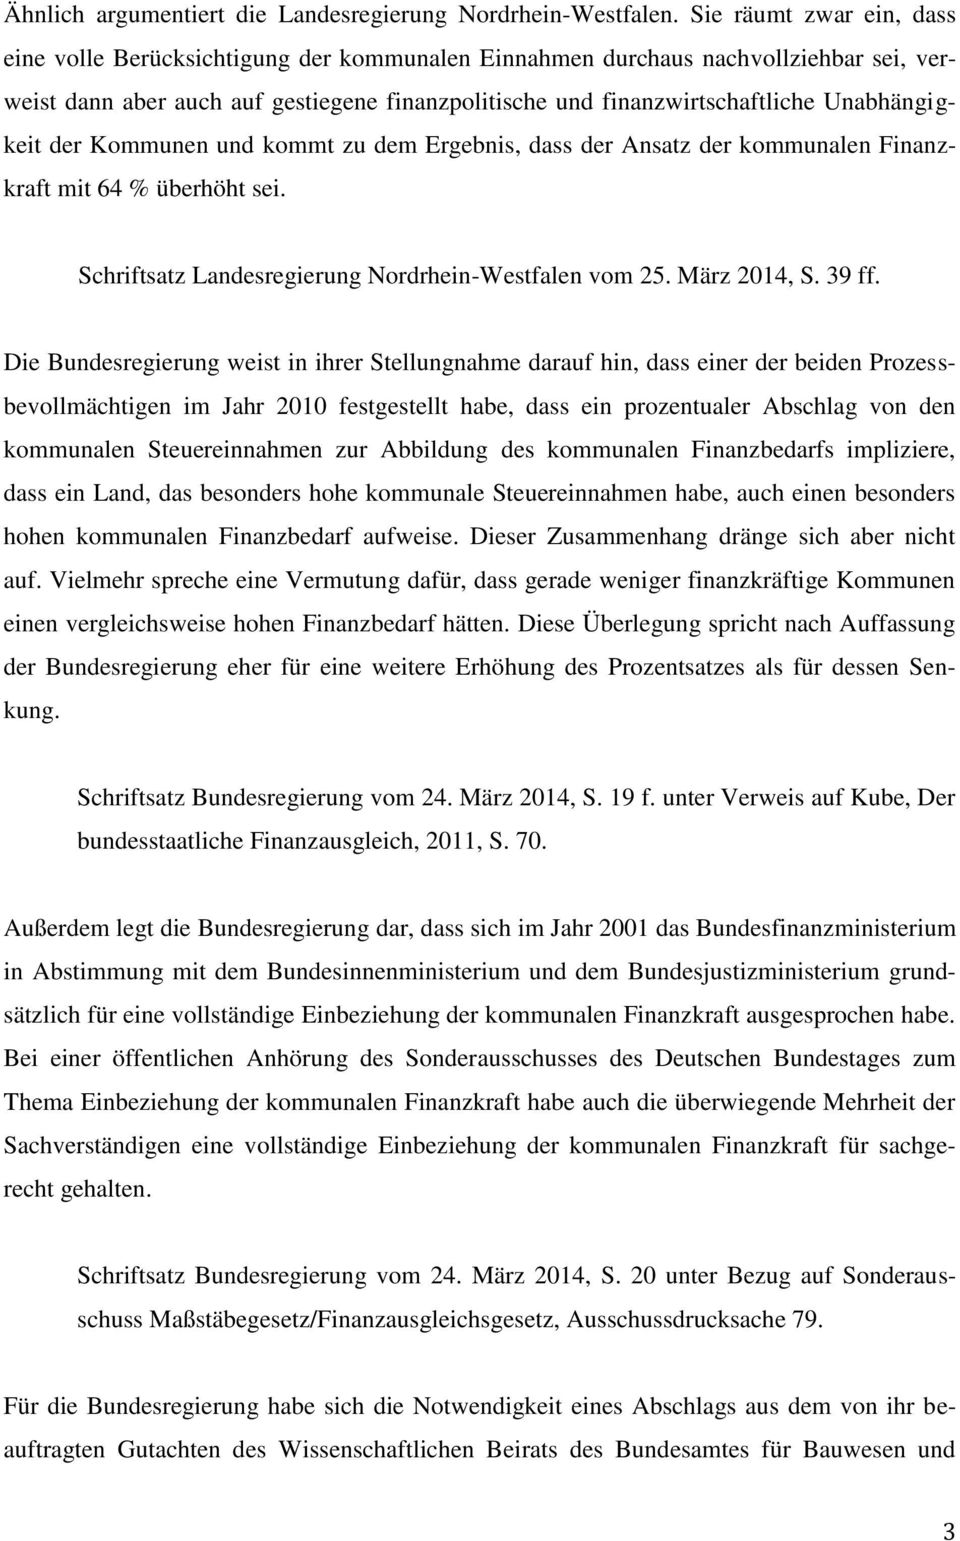 Unabhängigkeit der Kommunen und kommt zu dem Ergebnis, dass der Ansatz der kommunalen Finanzkraft mit 64 % überhöht sei. Schriftsatz Landesregierung Nordrhein-Westfalen vom 25. März 2014, S. 39 ff.